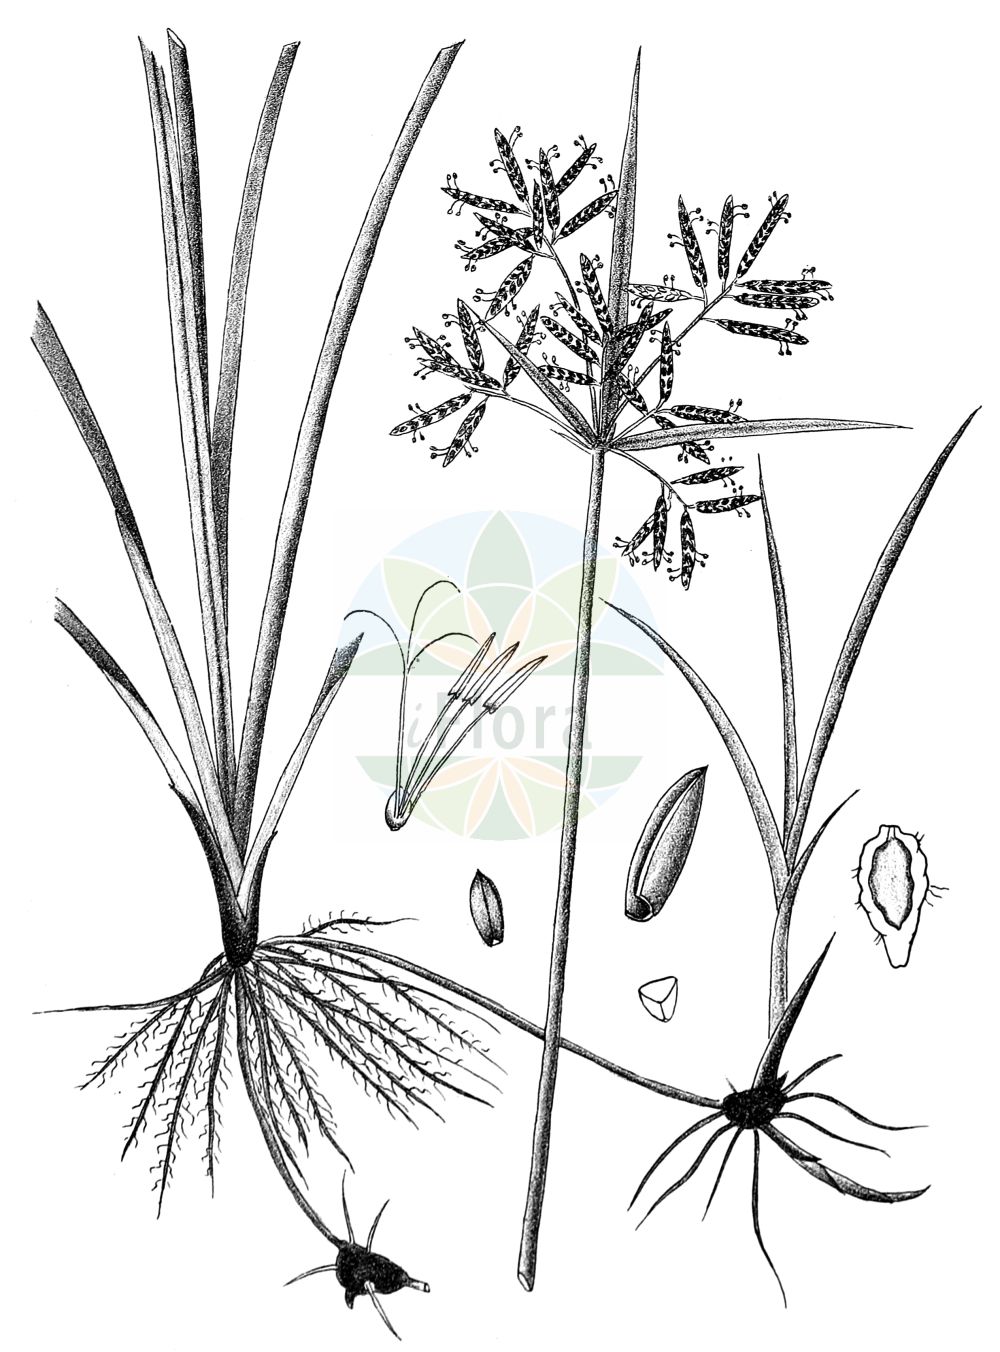 Historische Abbildung von Cyperus rotundus. Das Bild zeigt Blatt, Bluete, Frucht und Same. ---- Historical Drawing of Cyperus rotundus. The image is showing leaf, flower, fruit and seed.(Cyperus rotundus,Chlorocyperus rotundus,Cyperus olivaris,Cyperus rotundus,Cyperus tuberosus,Pycreus rotundus,Cyperus,Zypergras,Flatsedge,Cyperaceae,Sauergräser,Sedge family,Blatt,Bluete,Frucht,Same,leaf,flower,fruit,seed,Kirtikar & Basu (1918))